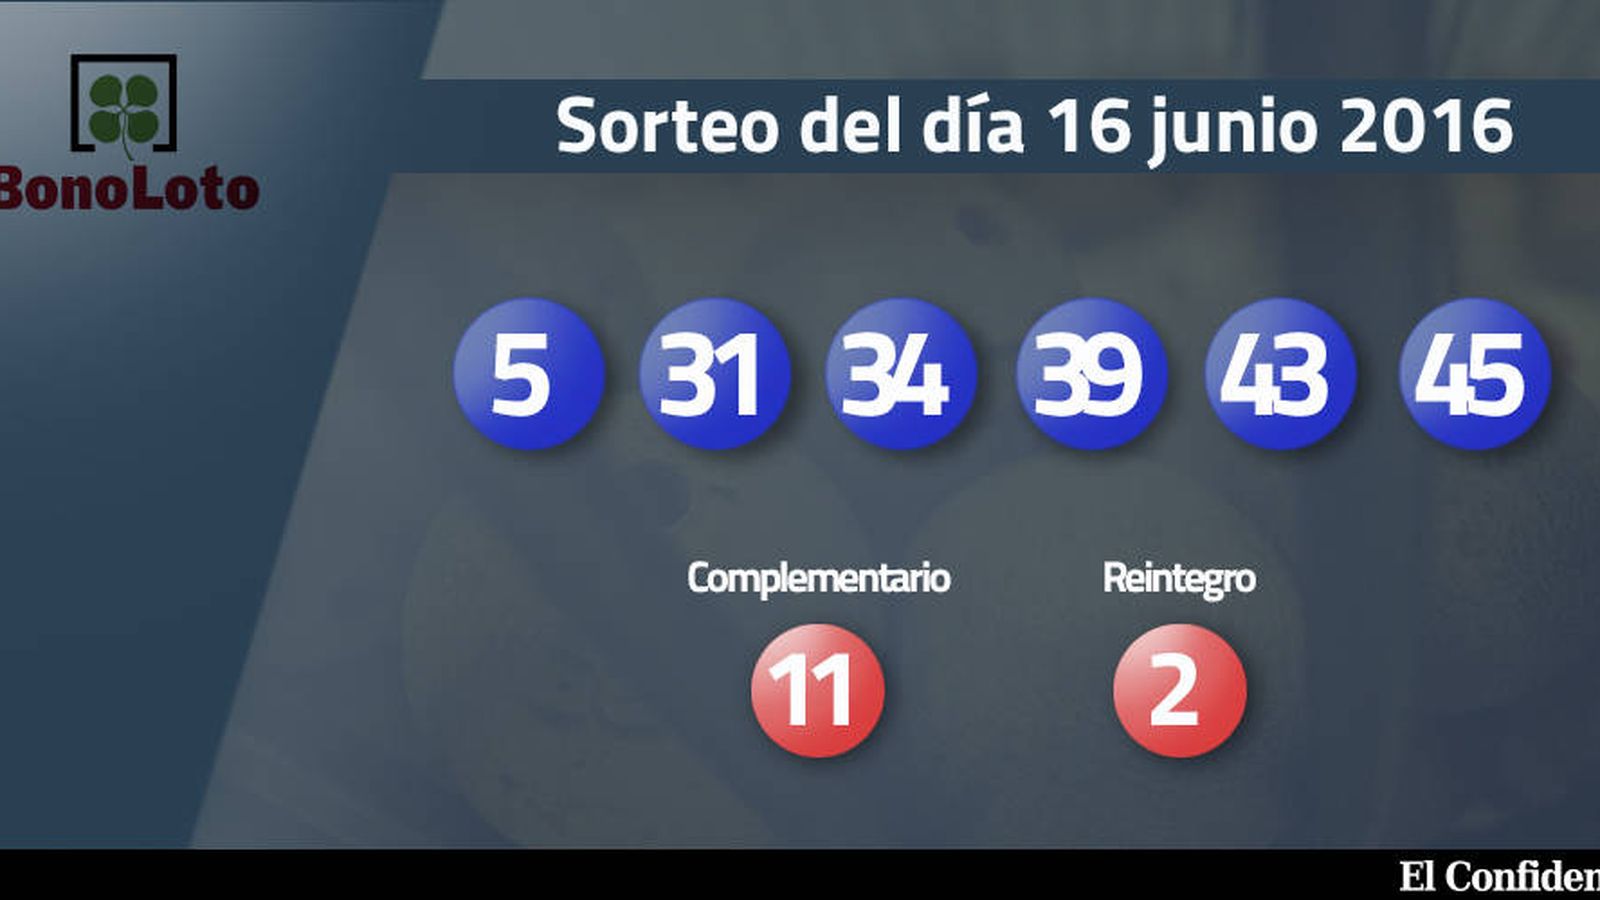 Foto: Resultados del sorteo de la Bonoloto del 16 junio 2016 (EC)